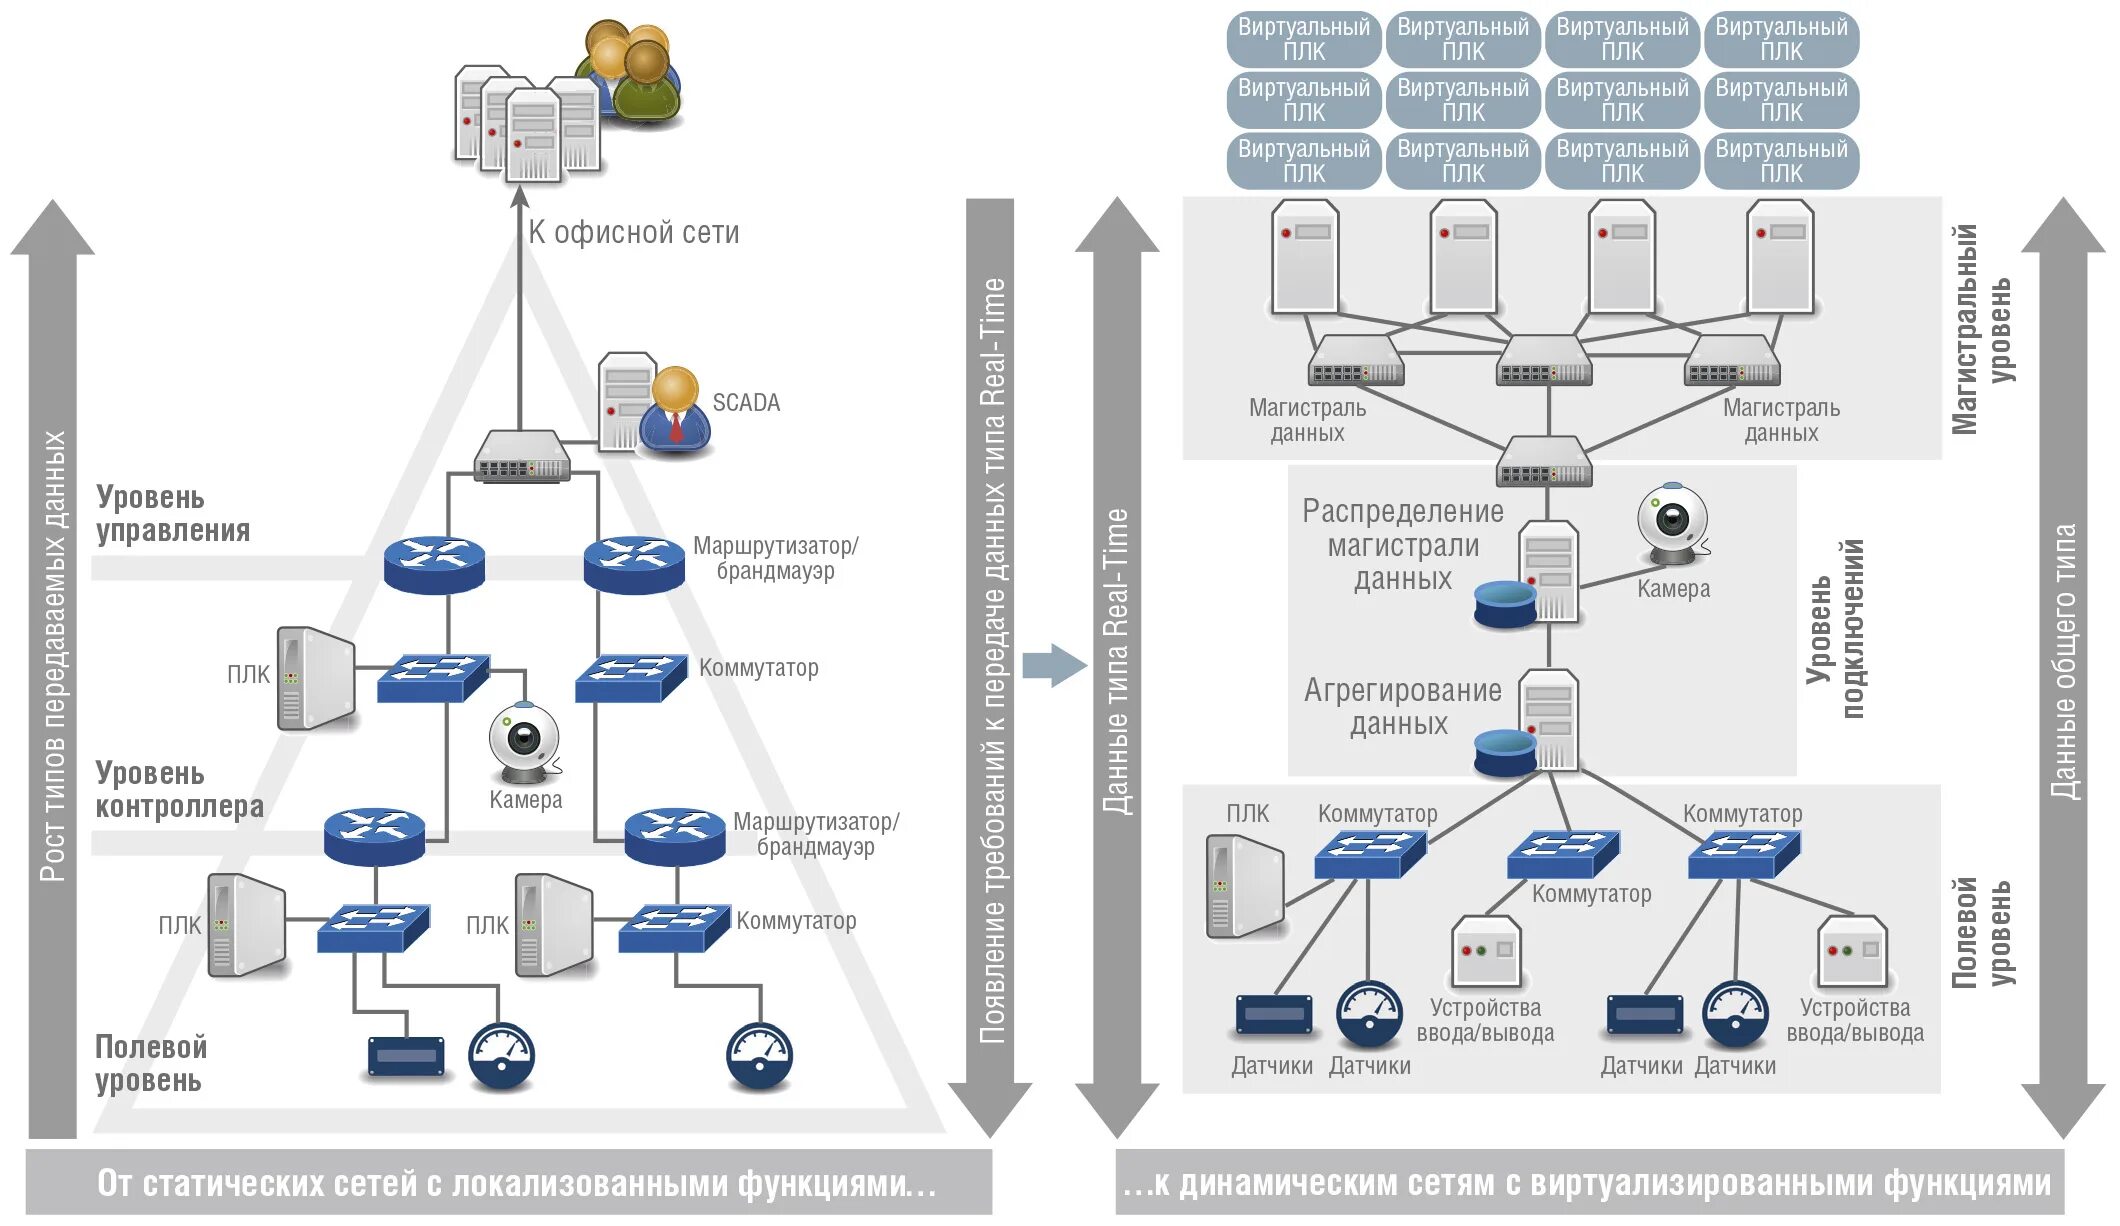 Схема промышленной сети. Интерфейсы и протоколы промышленных сетей. Протоколы управления промышленных сетей. Виды промышленных сетей.